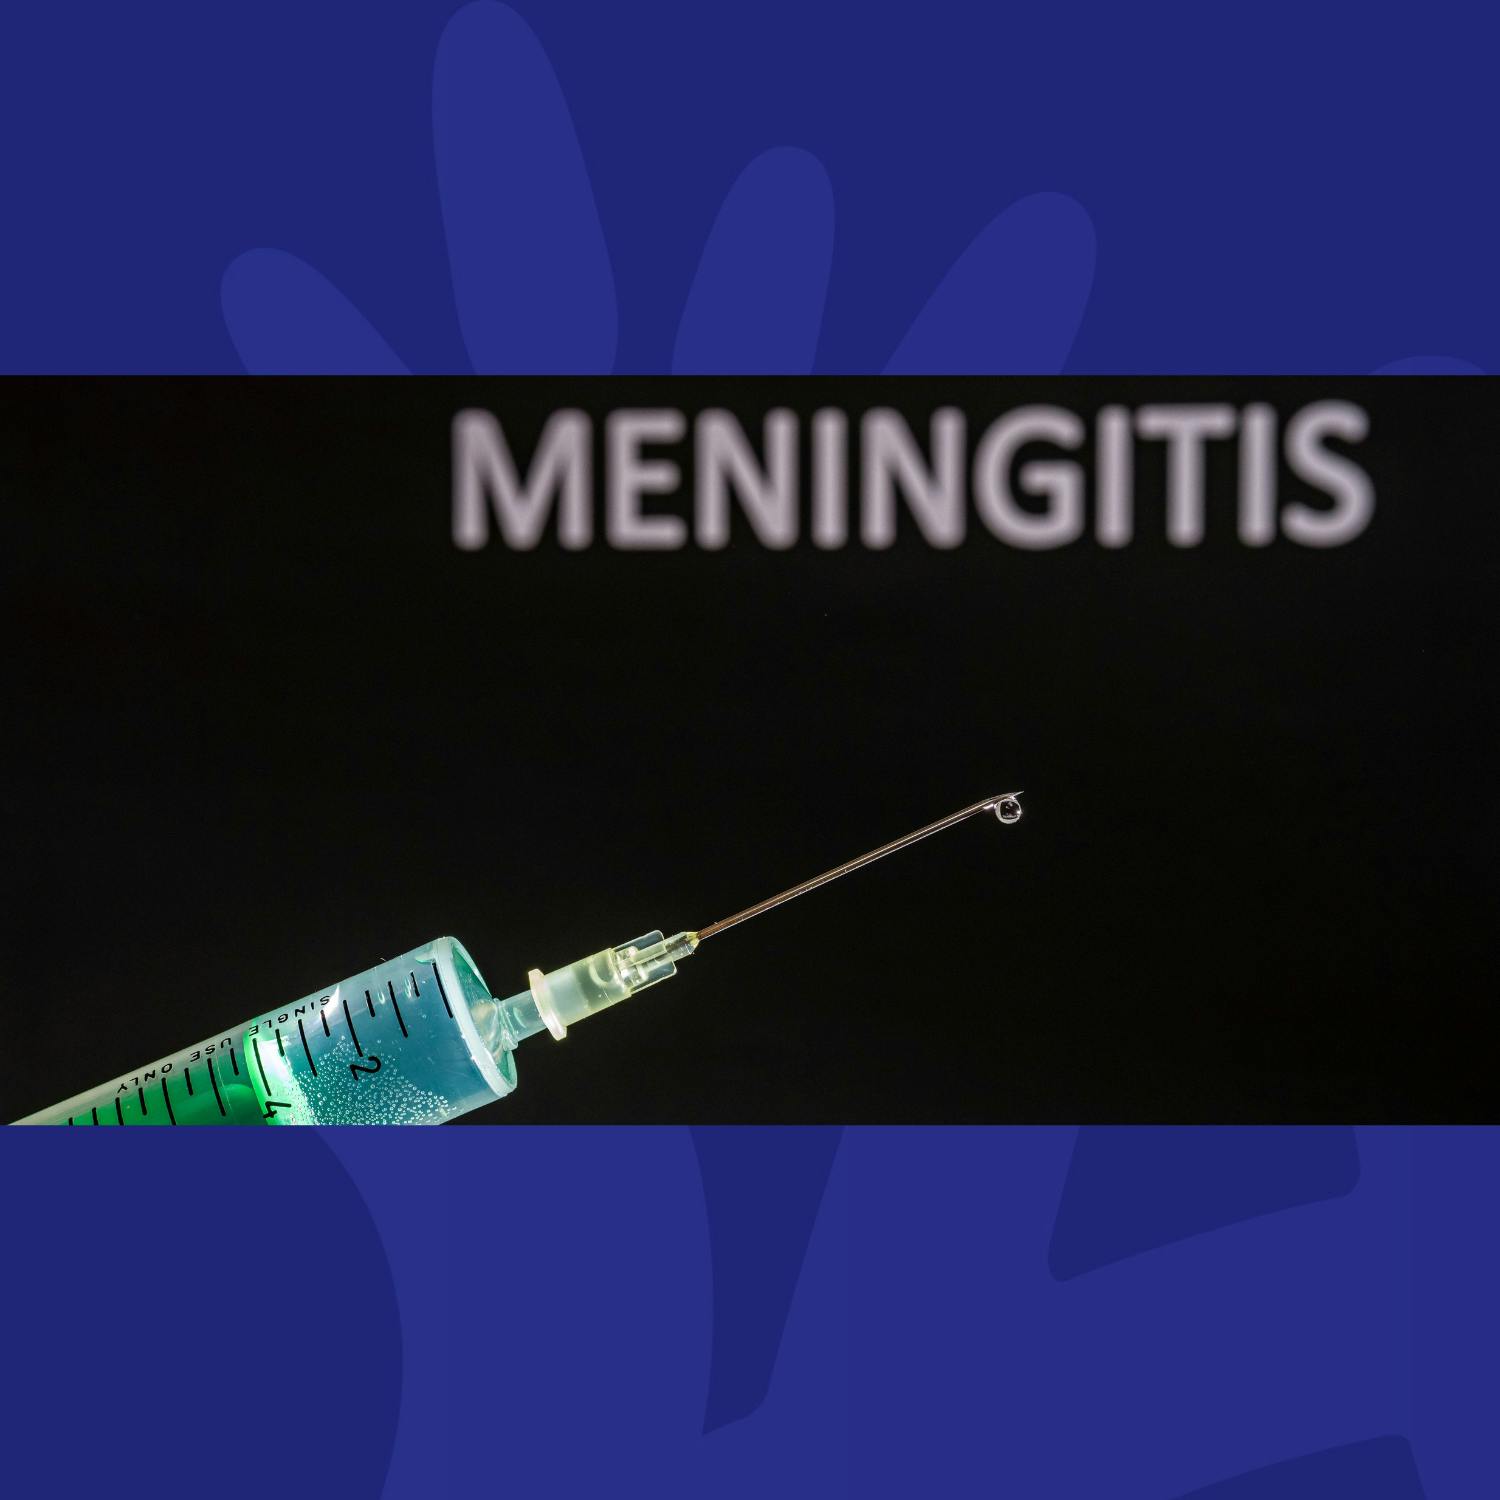 What is Meningitis?